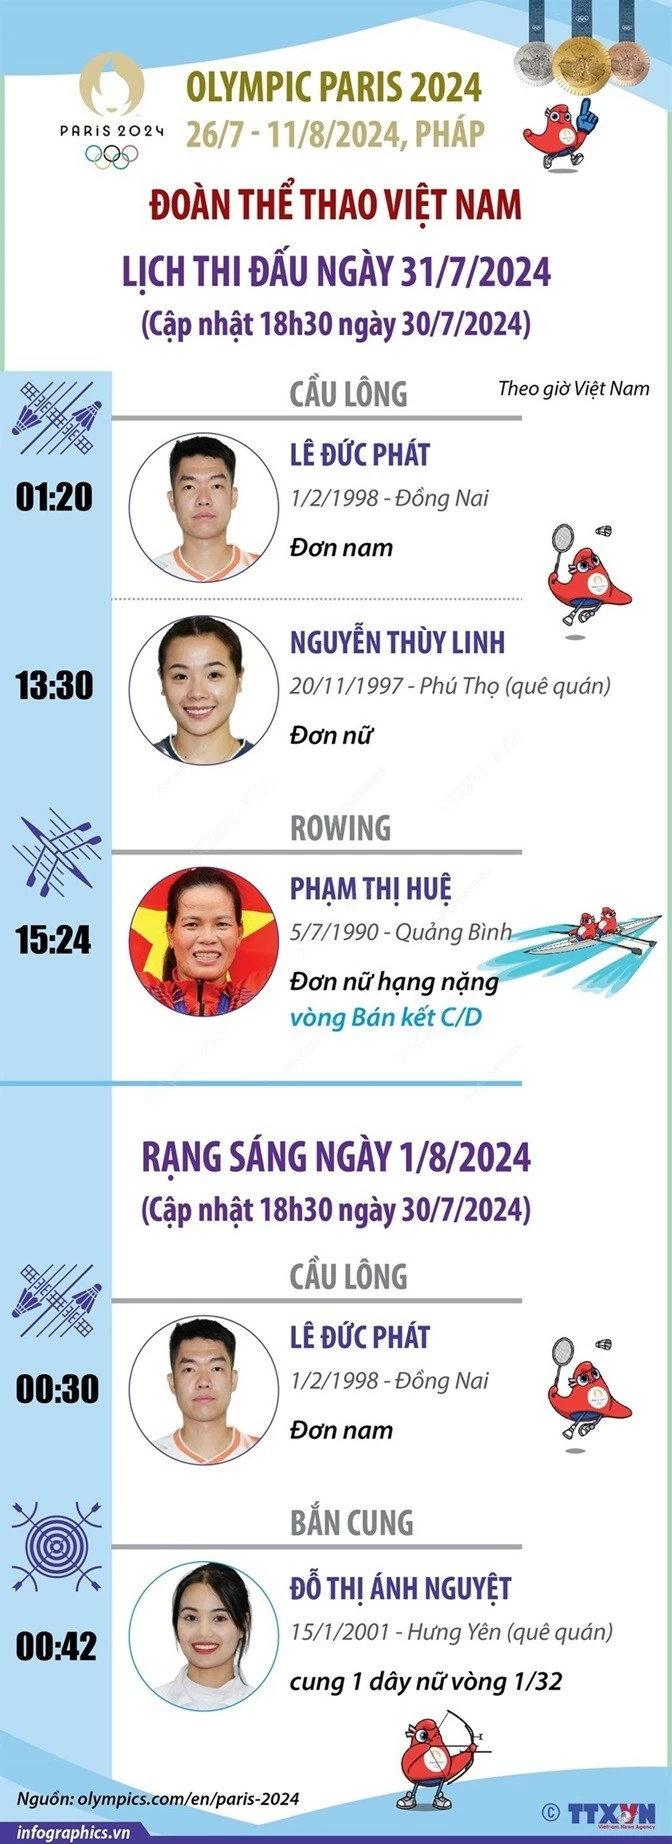 Lịch thi đấu Olympic Paris 2024 ngày 31/7 và rạng sáng 1/8 của Đoàn thể thao Việt Nam